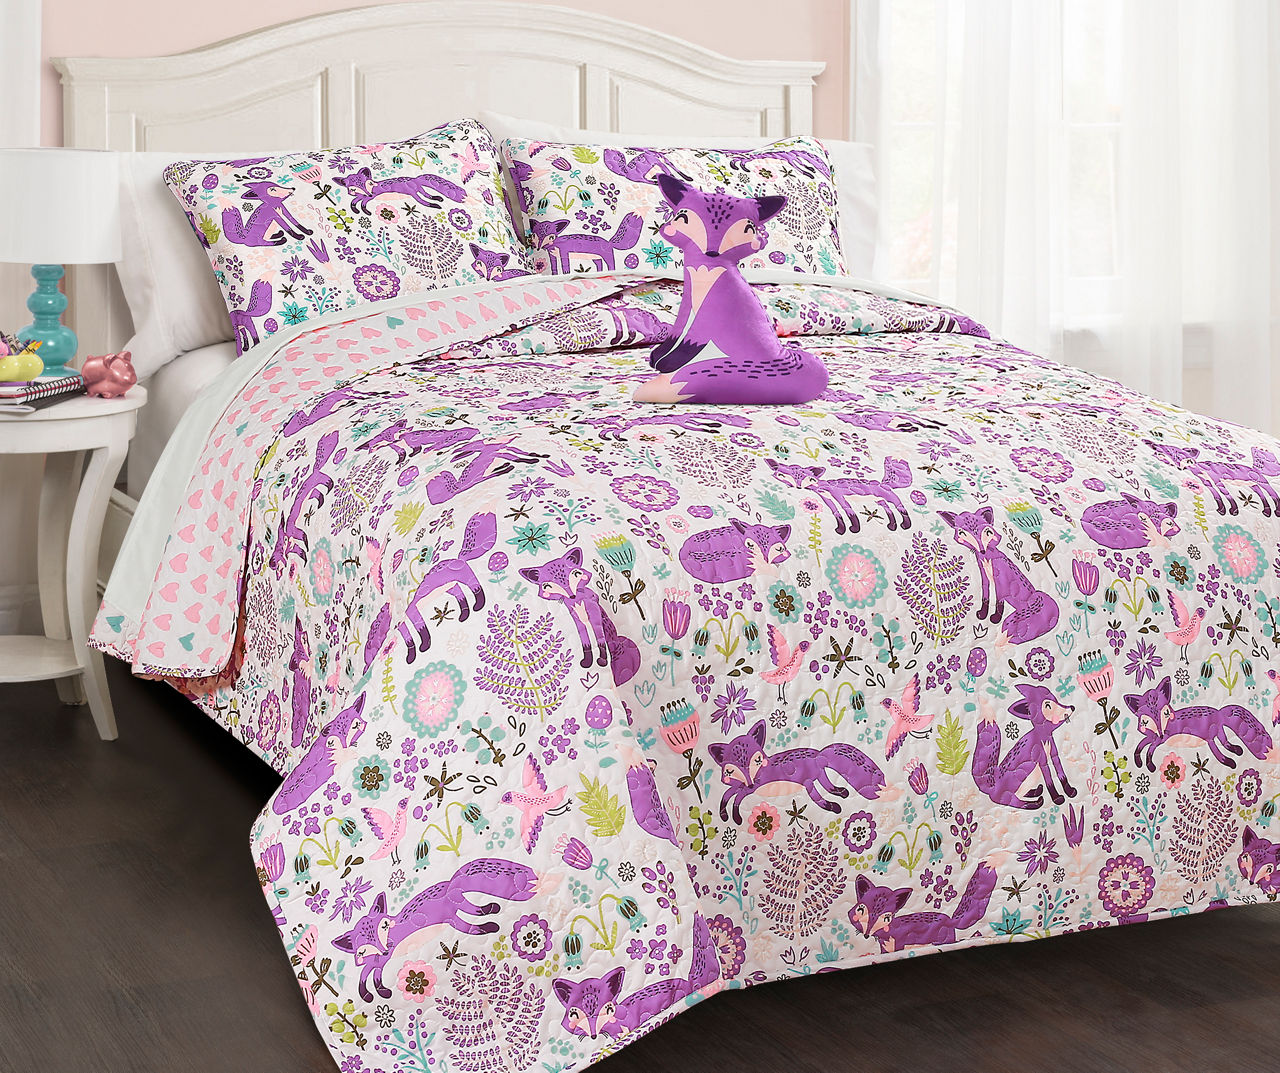 Pixie Fox White & Purple Floral Twin 3-Piece Quilt Set